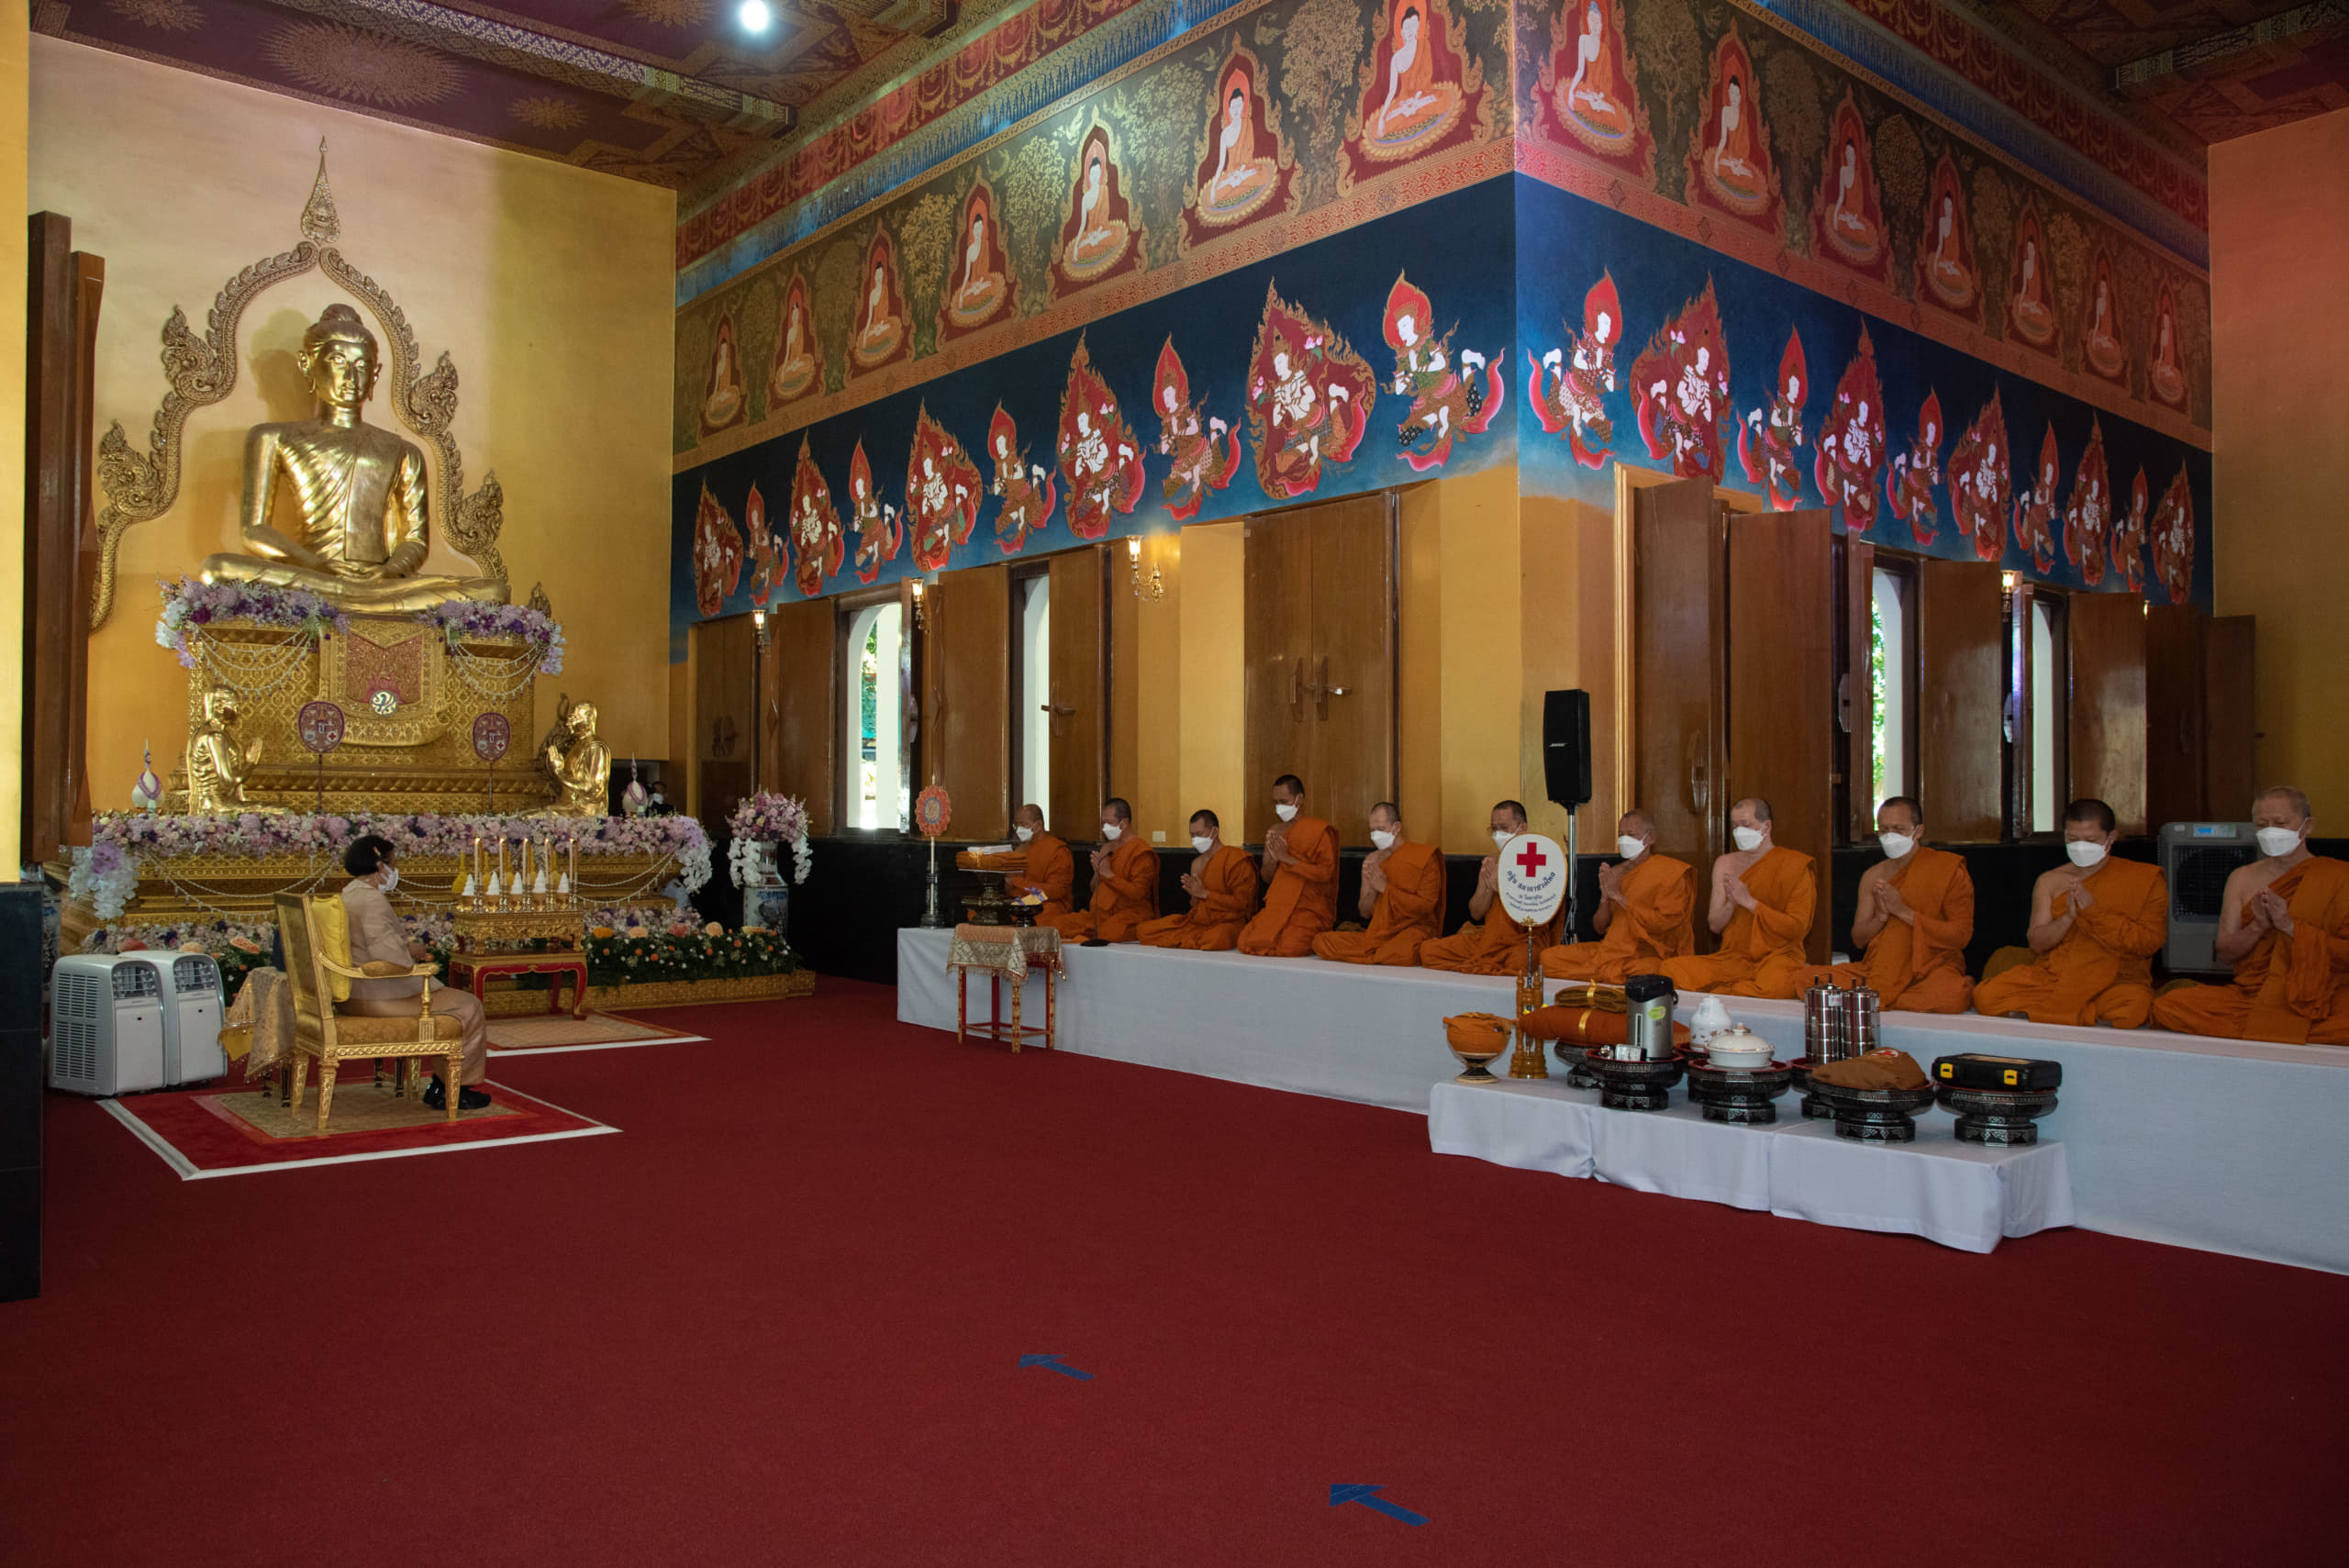 สมเด็จพระกนิษฐาธิราชเจ้า กรมสมเด็จพระเทพรัตนราชสุดา ฯ สยามบรมราชกุมารี ทรงบำเพ็ญพระราชกุศล ถวายผ้าพระกฐินสภากาชาดไทย ประจำปี 2564 ณ วัดเขาสุกิม อำเภอท่าใหม่ จังหวัดจันทบุรี